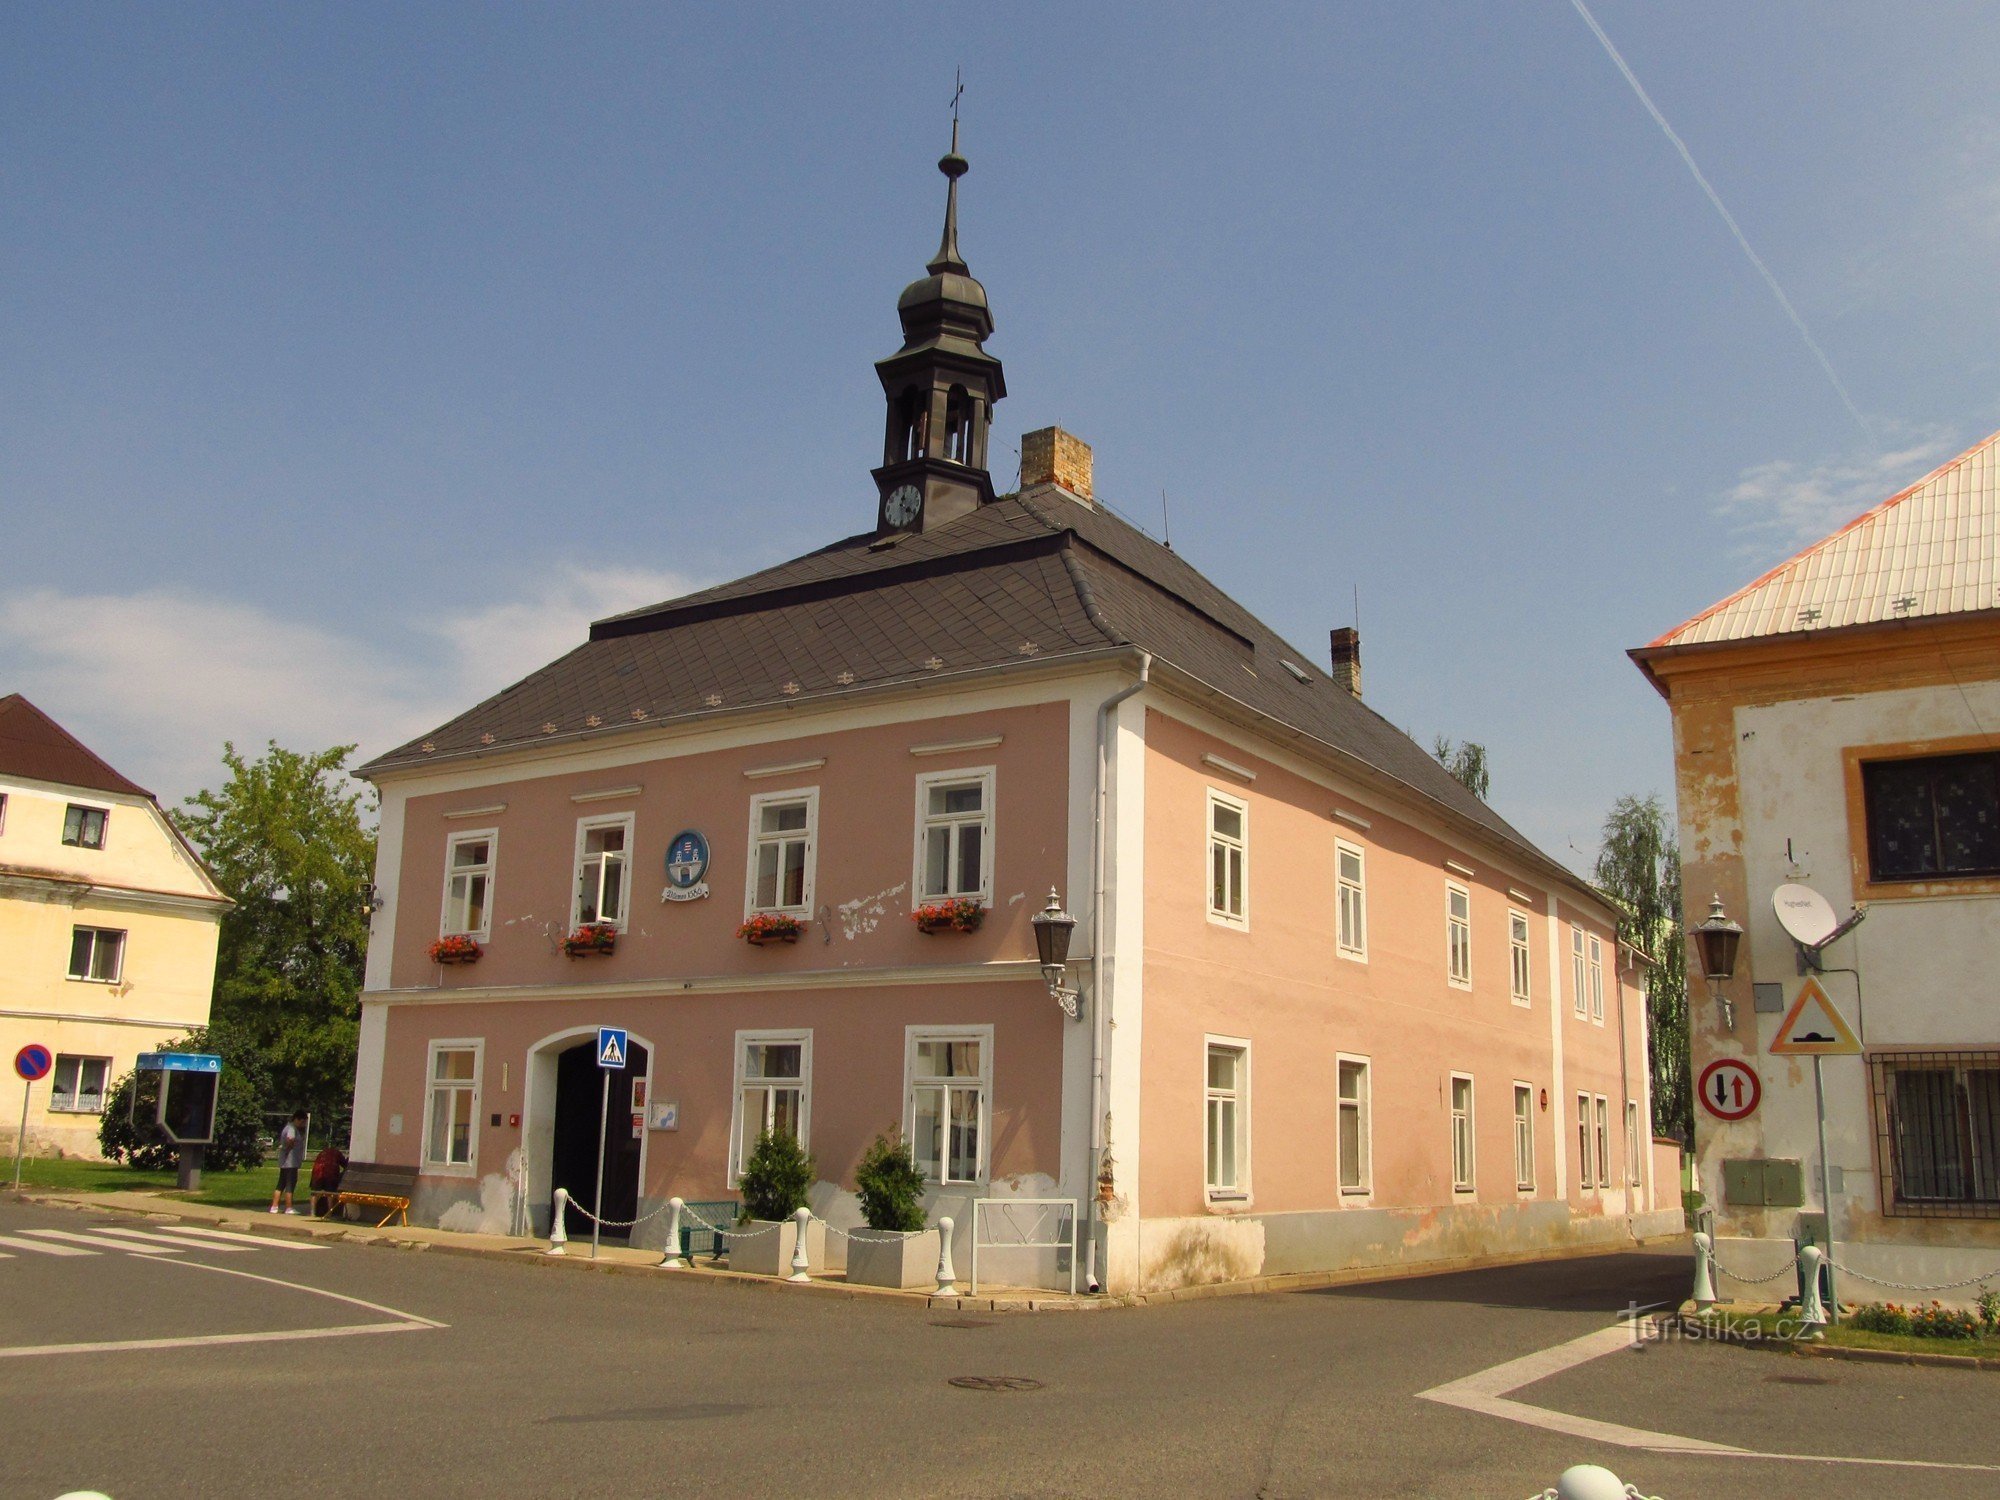 Vilémov Rathaus vom Ende des 18. Jahrhunderts mit Türmchen und Wappen an der Fassade